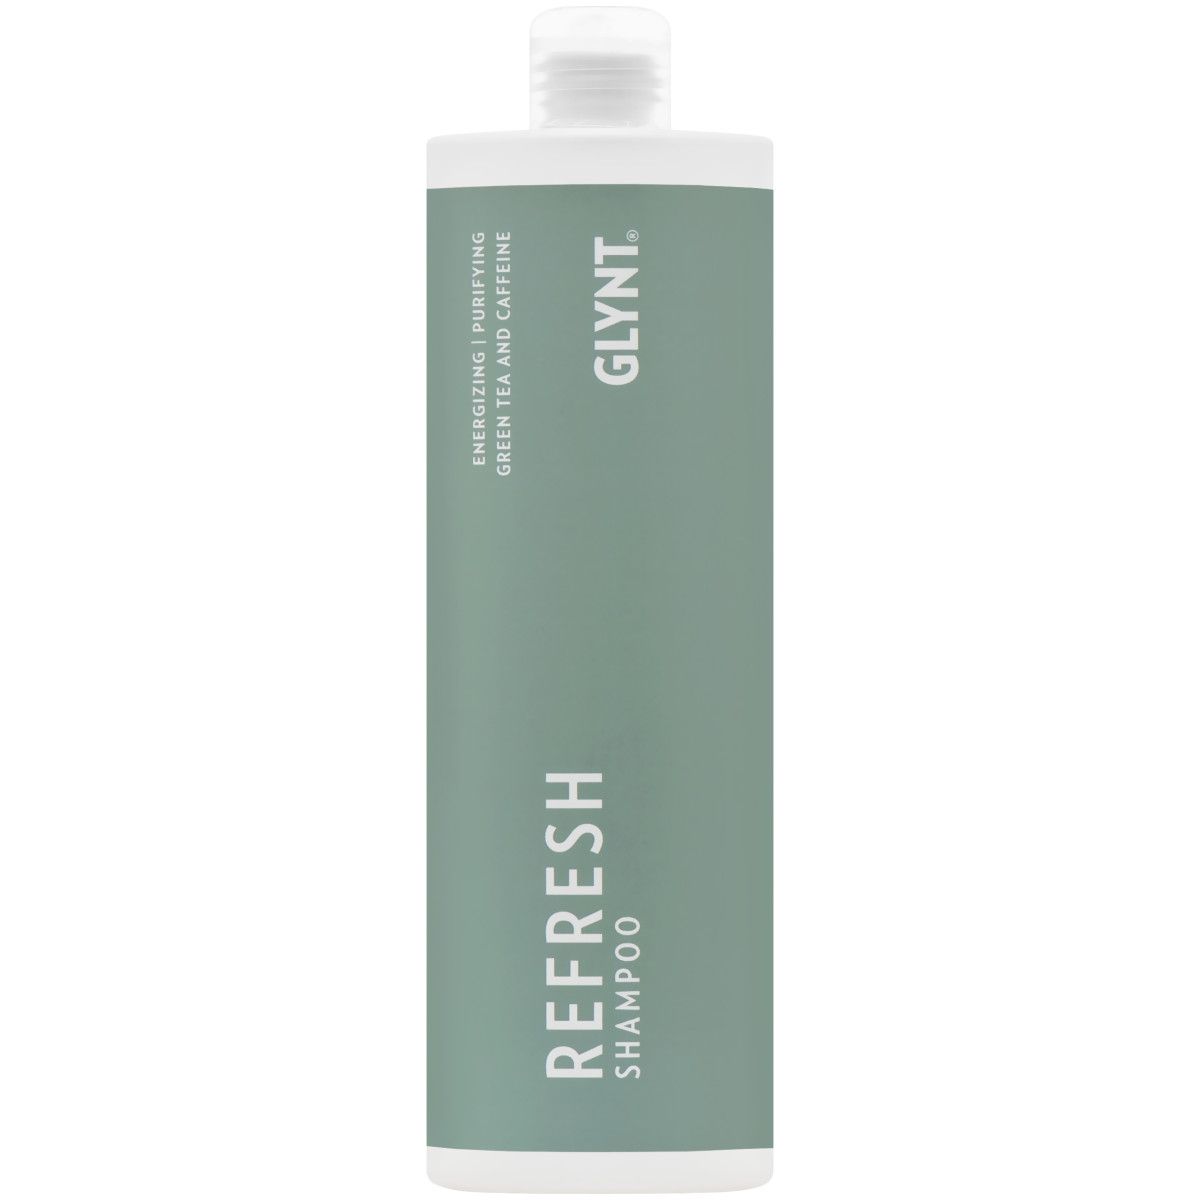 Glynt Refresh Shampoo - odświeżający szampon do włosów, 1000ml